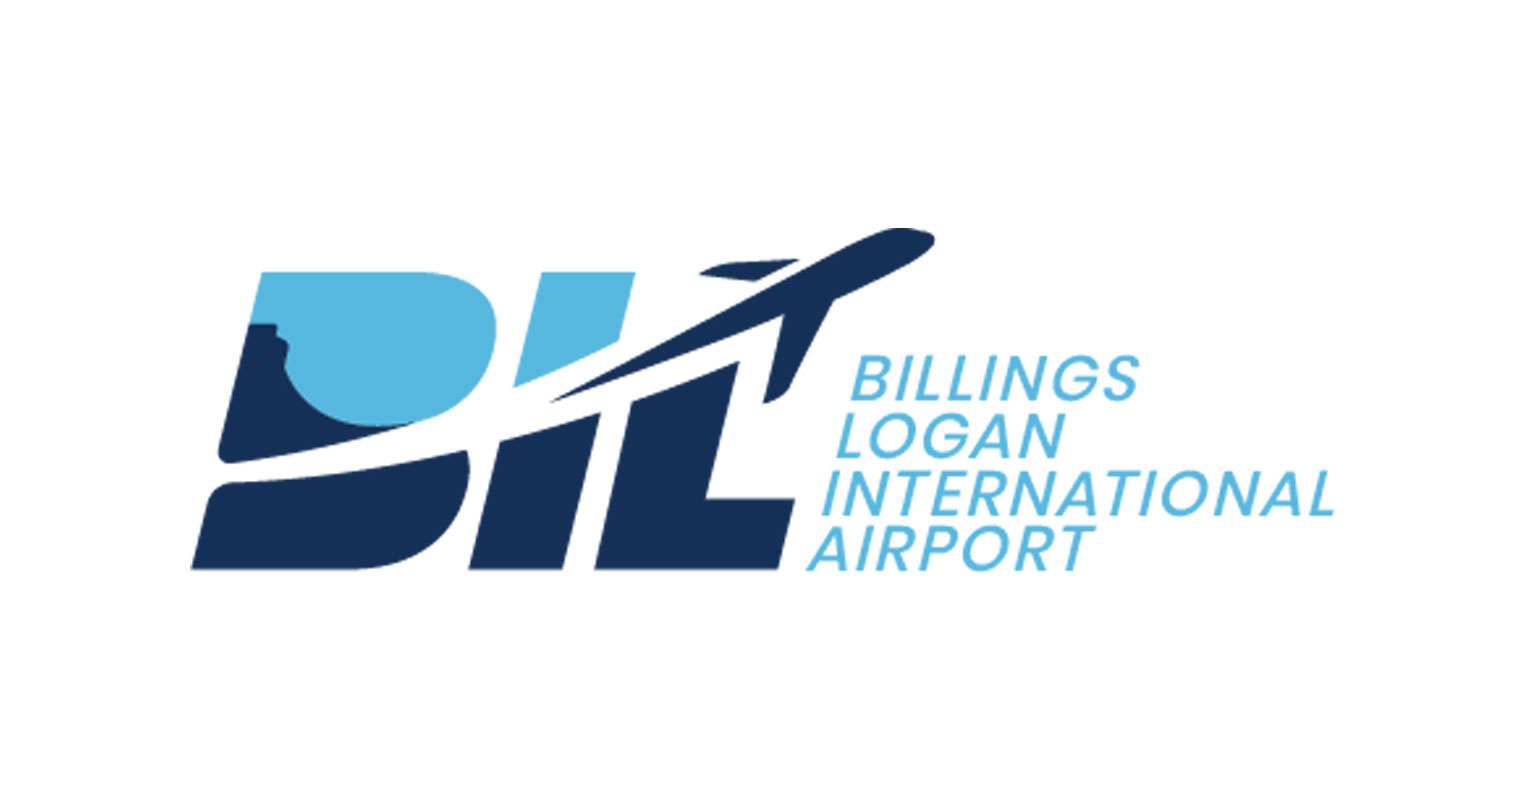 Billings Logan International Airport